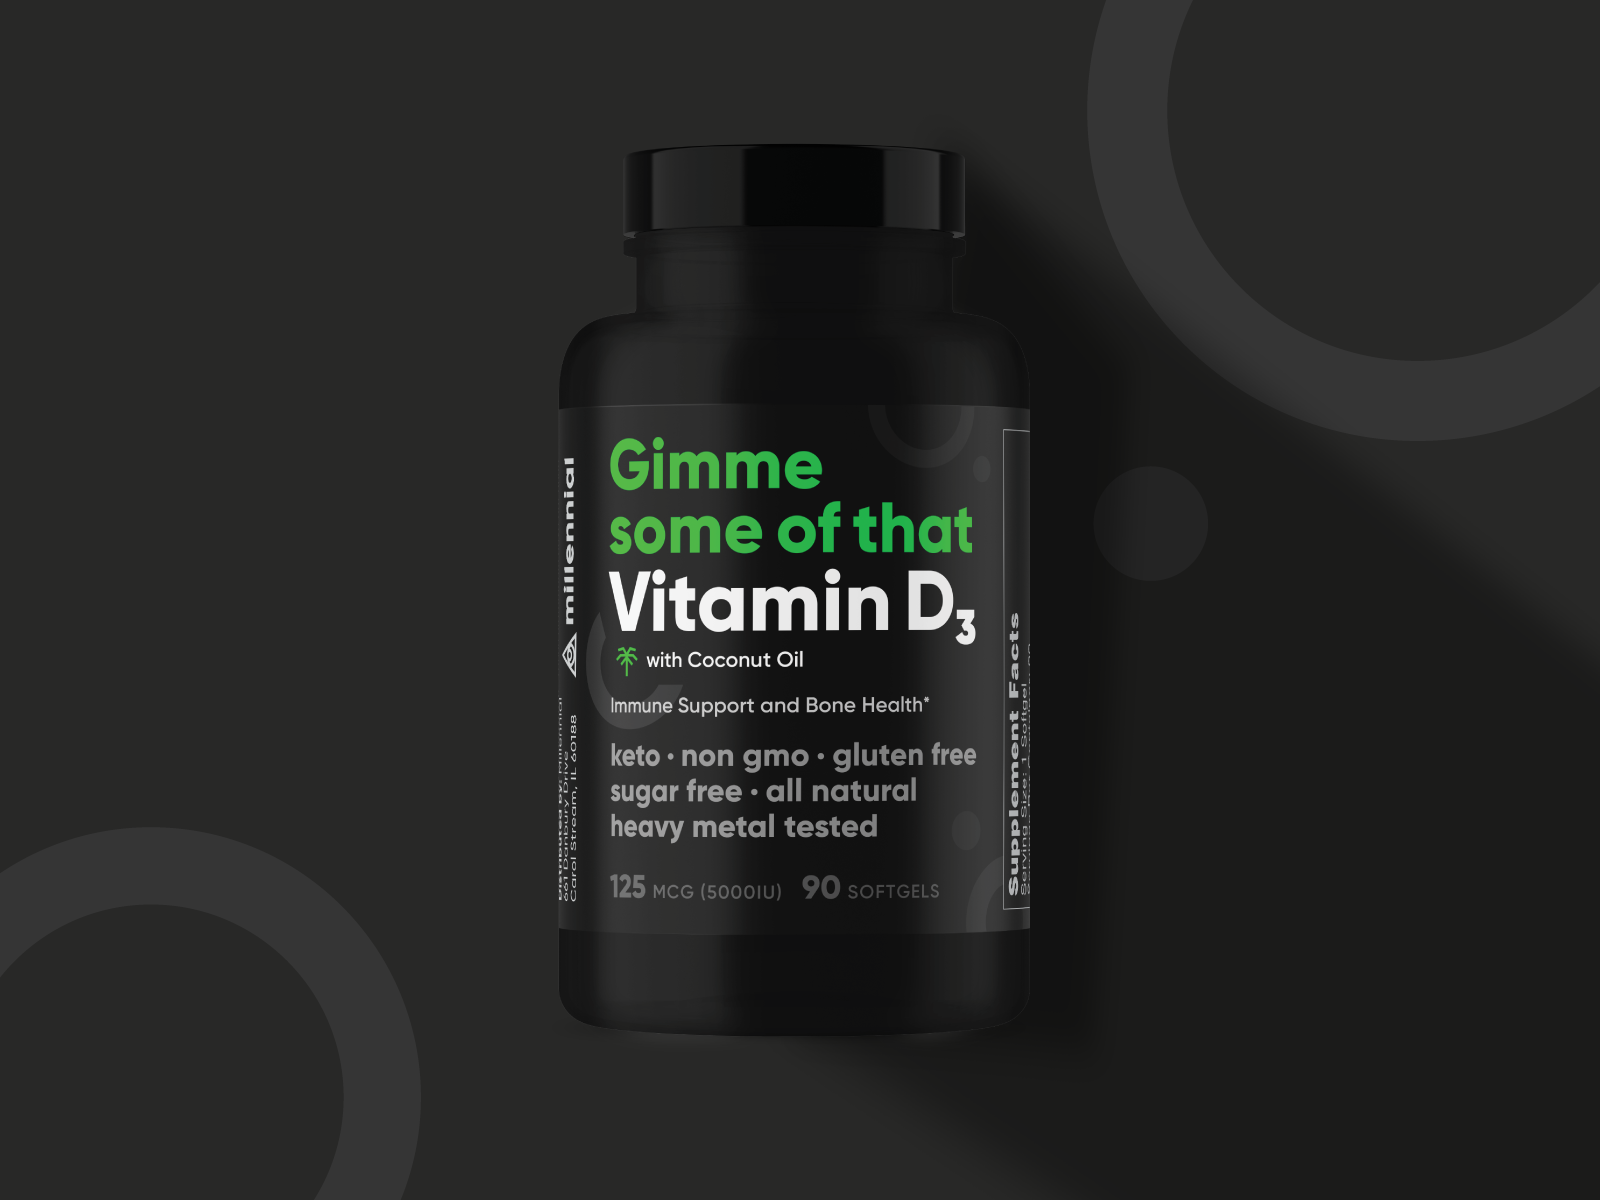 Millennial Vitamin D Packaging By Kalyn Krivacek For Llt Group On Dribbble